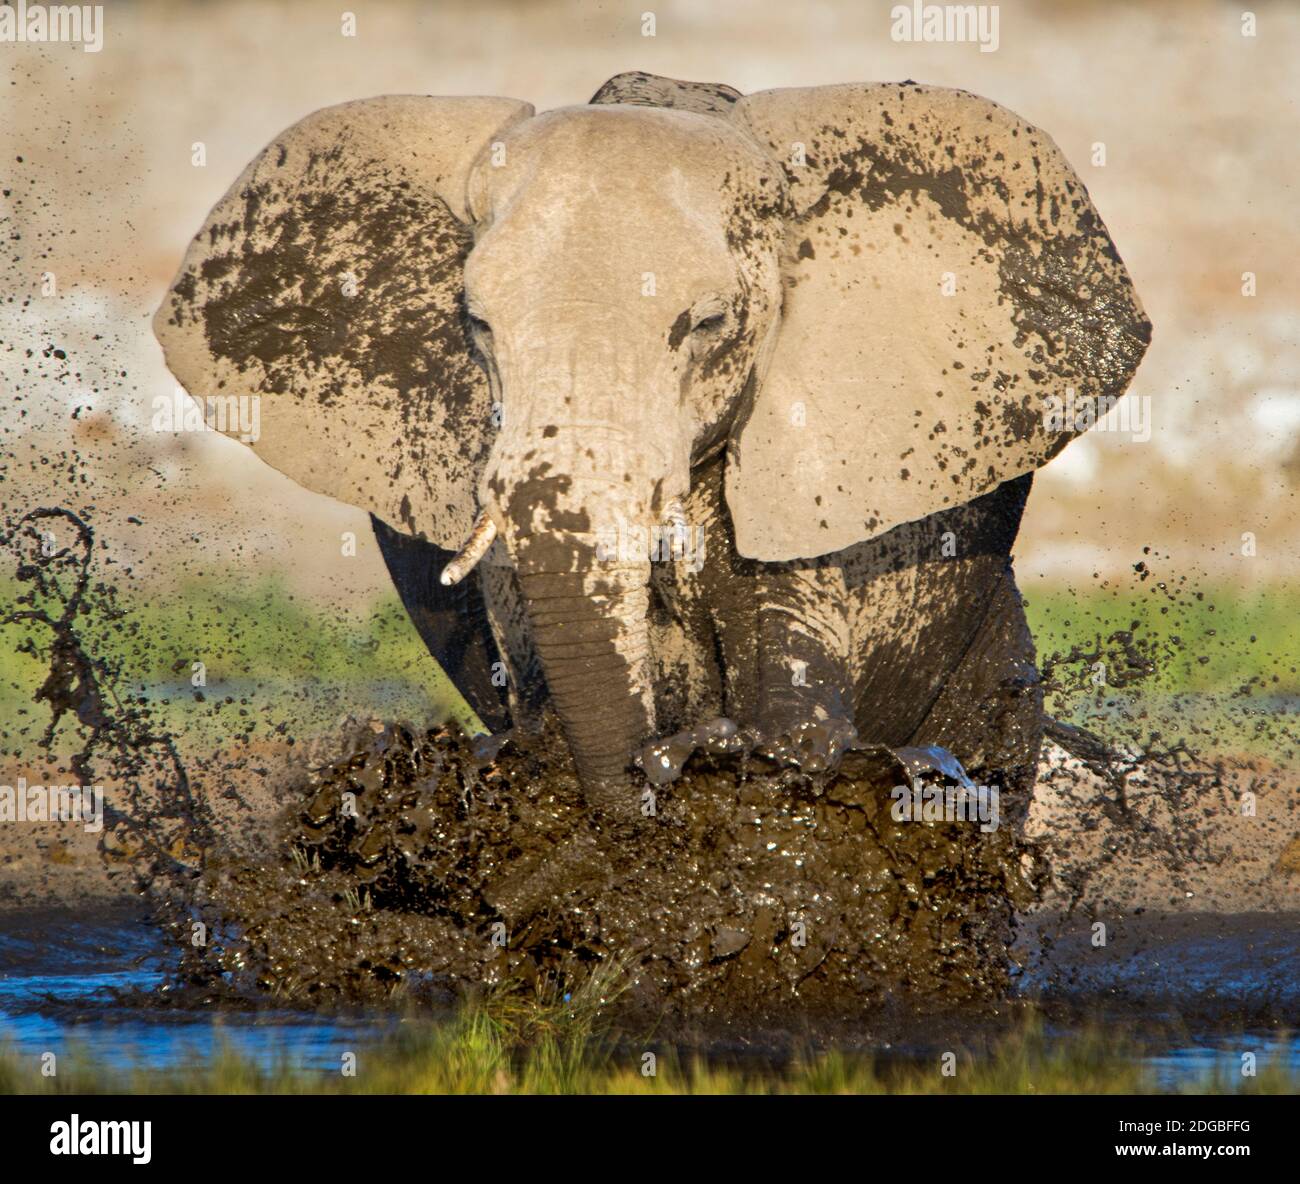 Elefante africano (Loxodonta africana) bañándose en el pozo de agua, Parque Nacional Etosha, Namibia Foto de stock